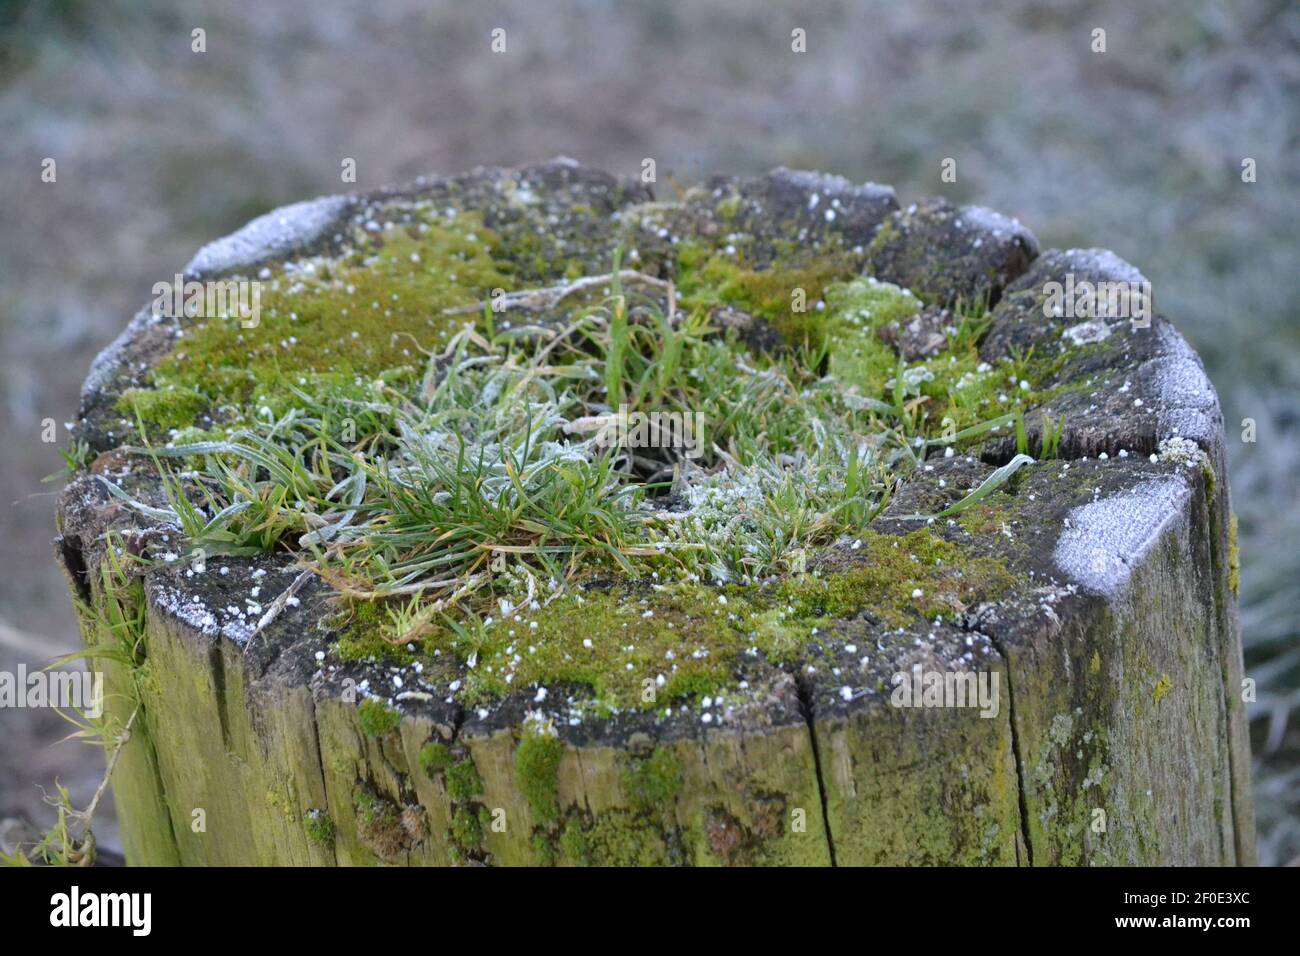 Souche de bois avec mousse et herbe poussant sur elle - Frosty Winters Day - glace sur le bois, herbe et mousse - saison d'hiver - Sussex Royaume-Uni Banque D'Images